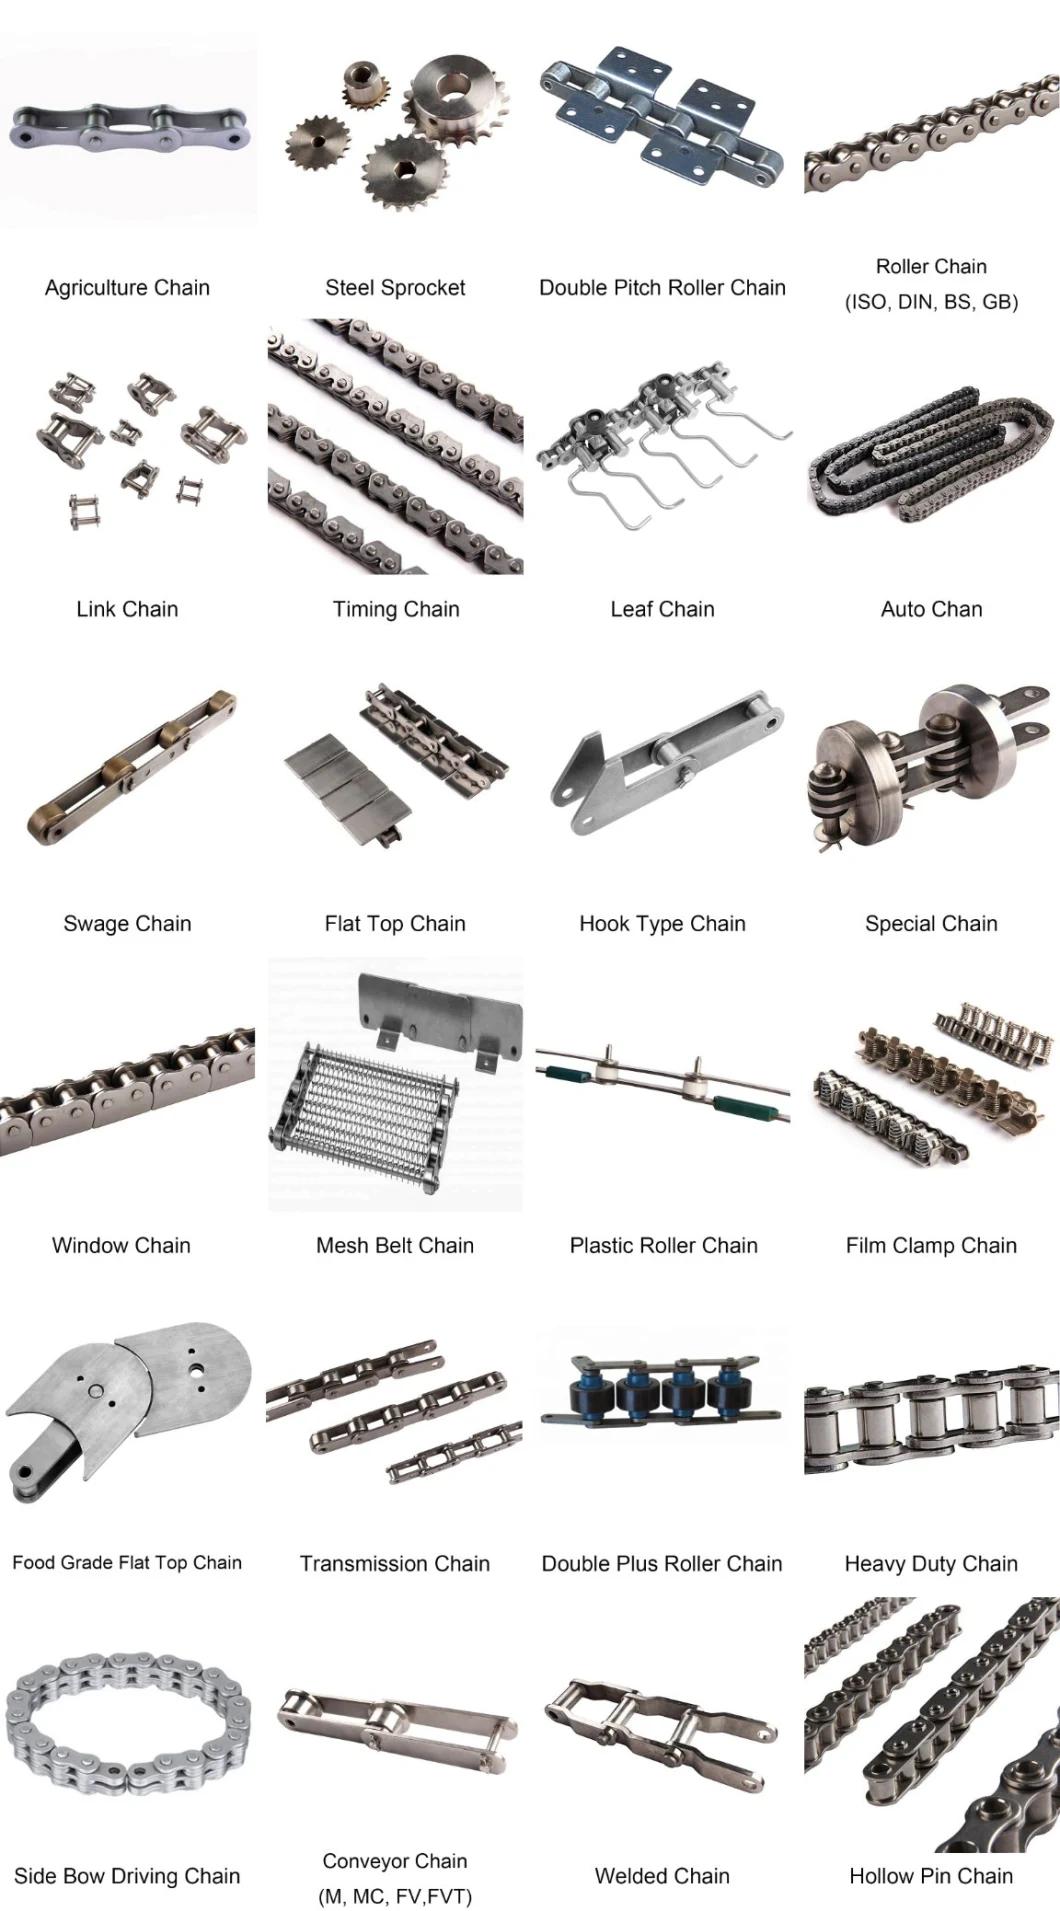 Metal Stainless Steel 316 Conveyor Mesh Belt Dryer Metal Conveyor Chain Type Mesh Chain Conveyor Belt